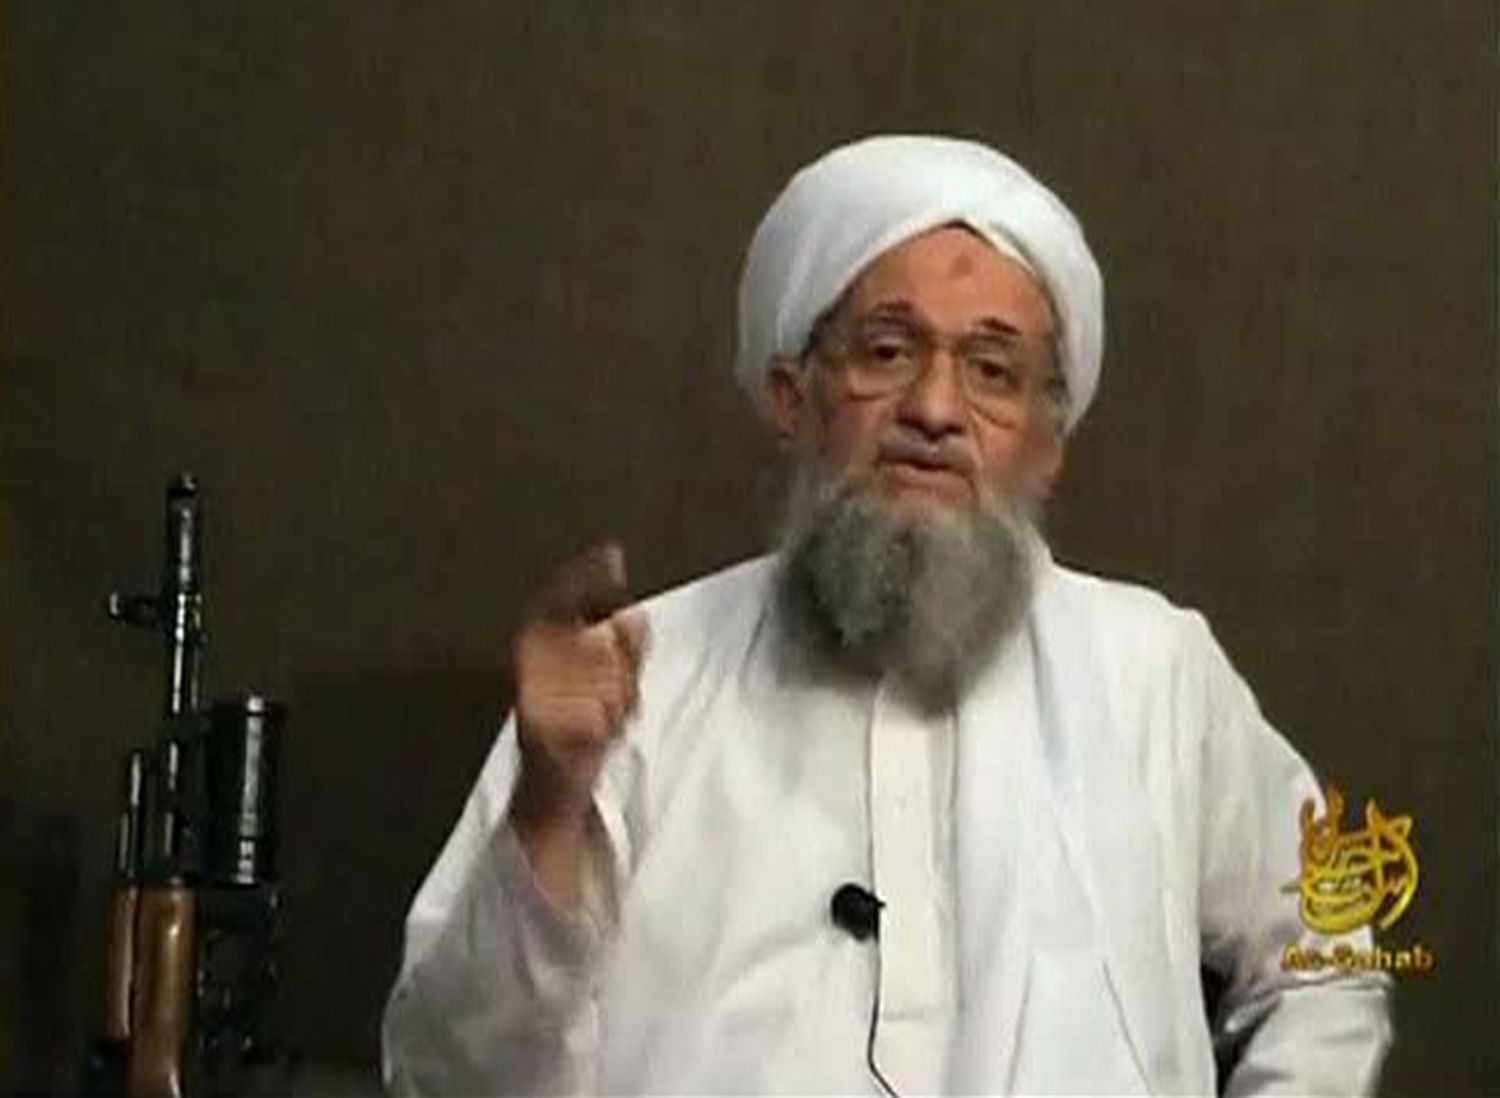 Al-Qaeda's Zawahiri